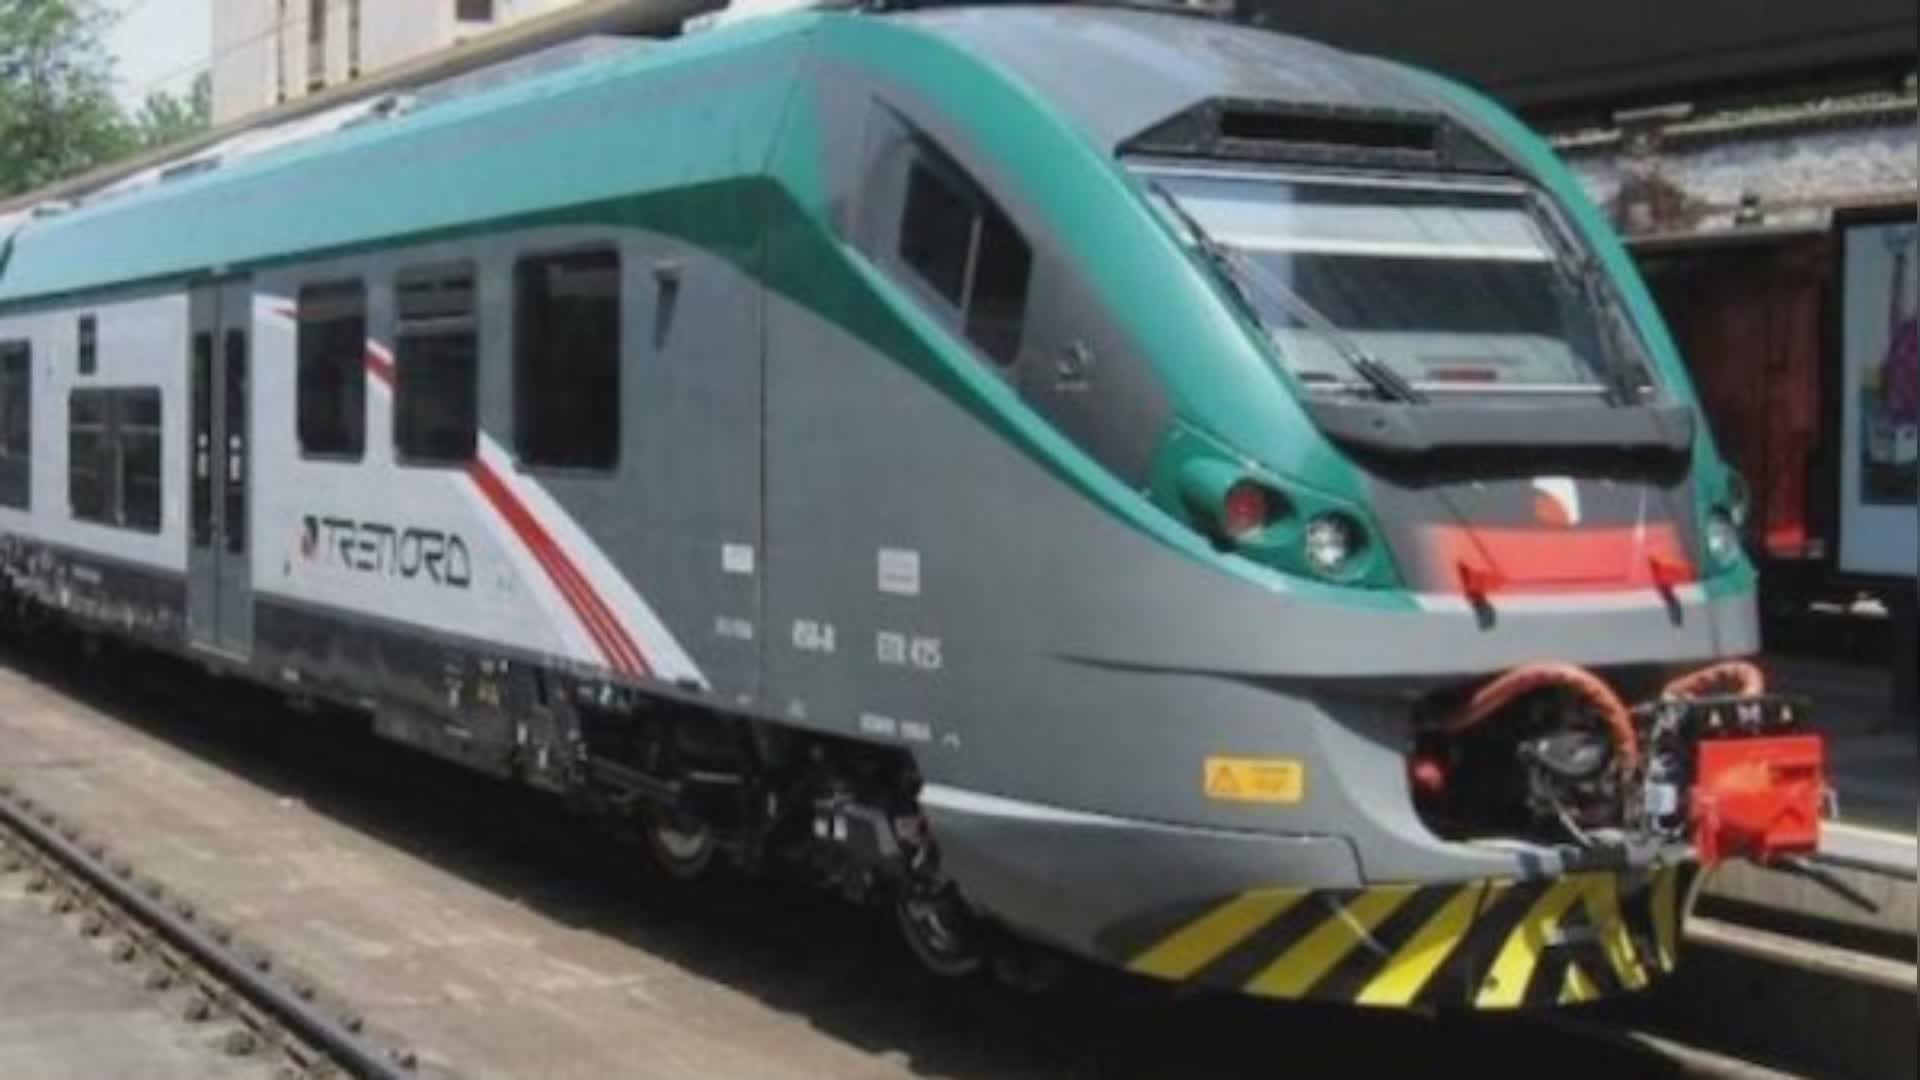 Genova, trasporti in circolazione: l'assessore Sartori: "Entro breve tempo arriveranno gli ultimi 5 treni rock"